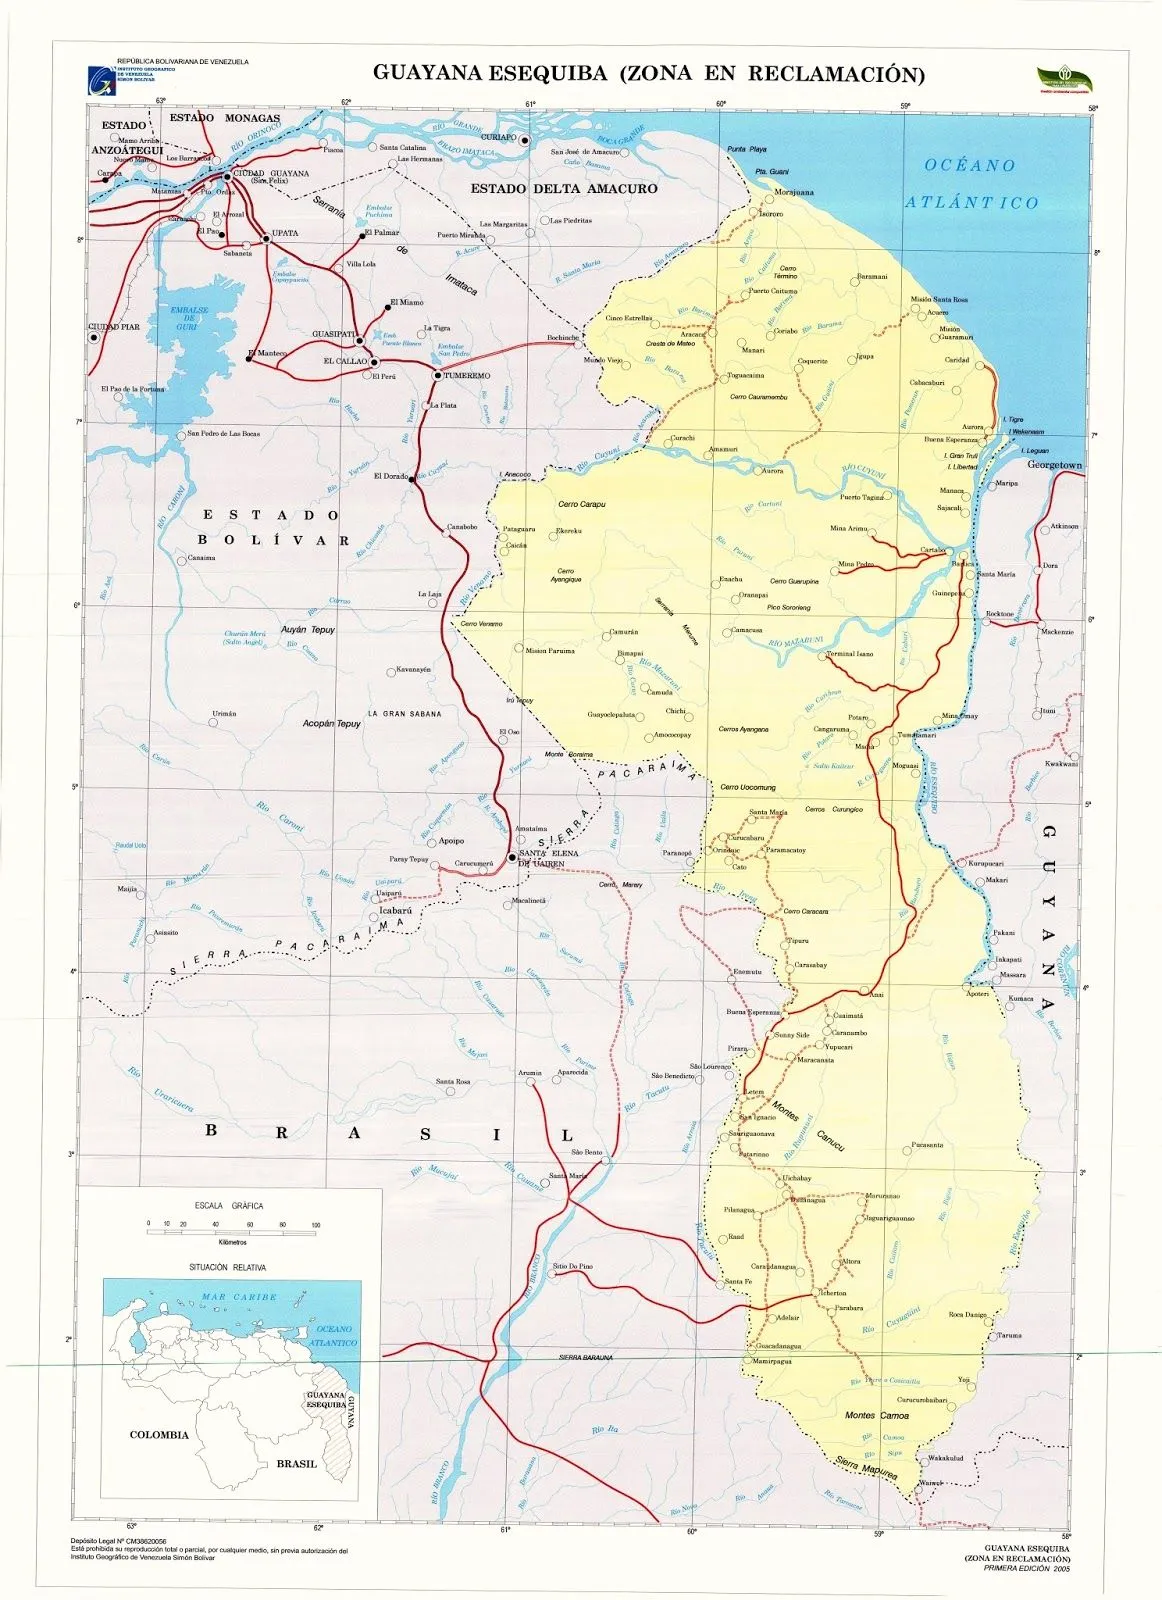 La Guayana Esequiba: diciembre 2016